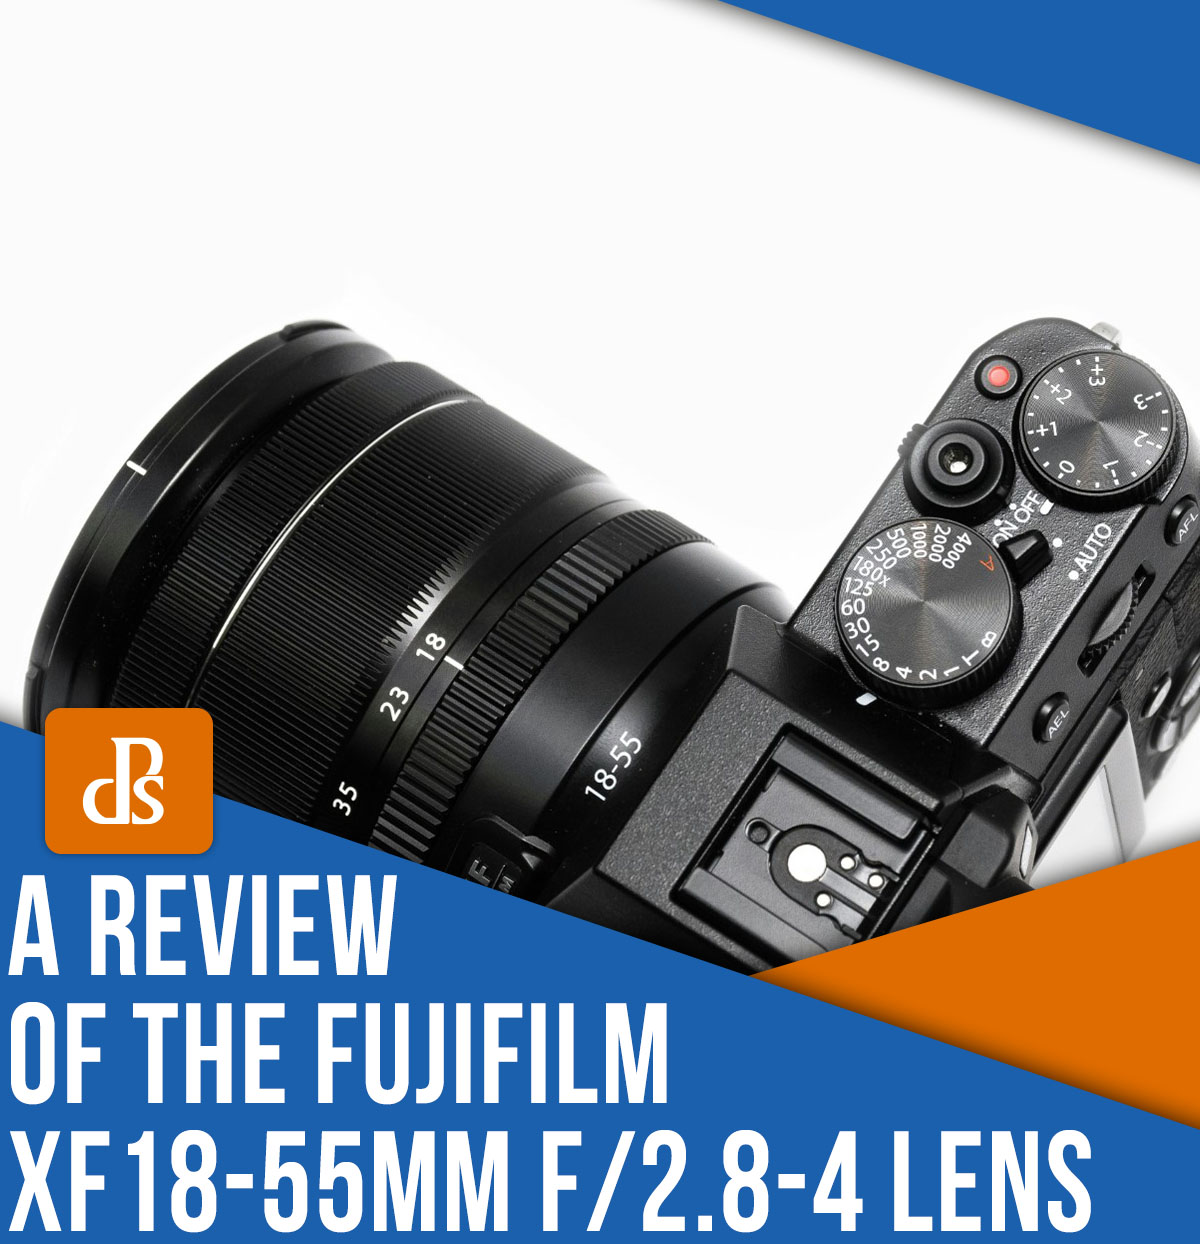 Recenzja obiektywu Fujifilm XF 18-55mm f/2.8-4